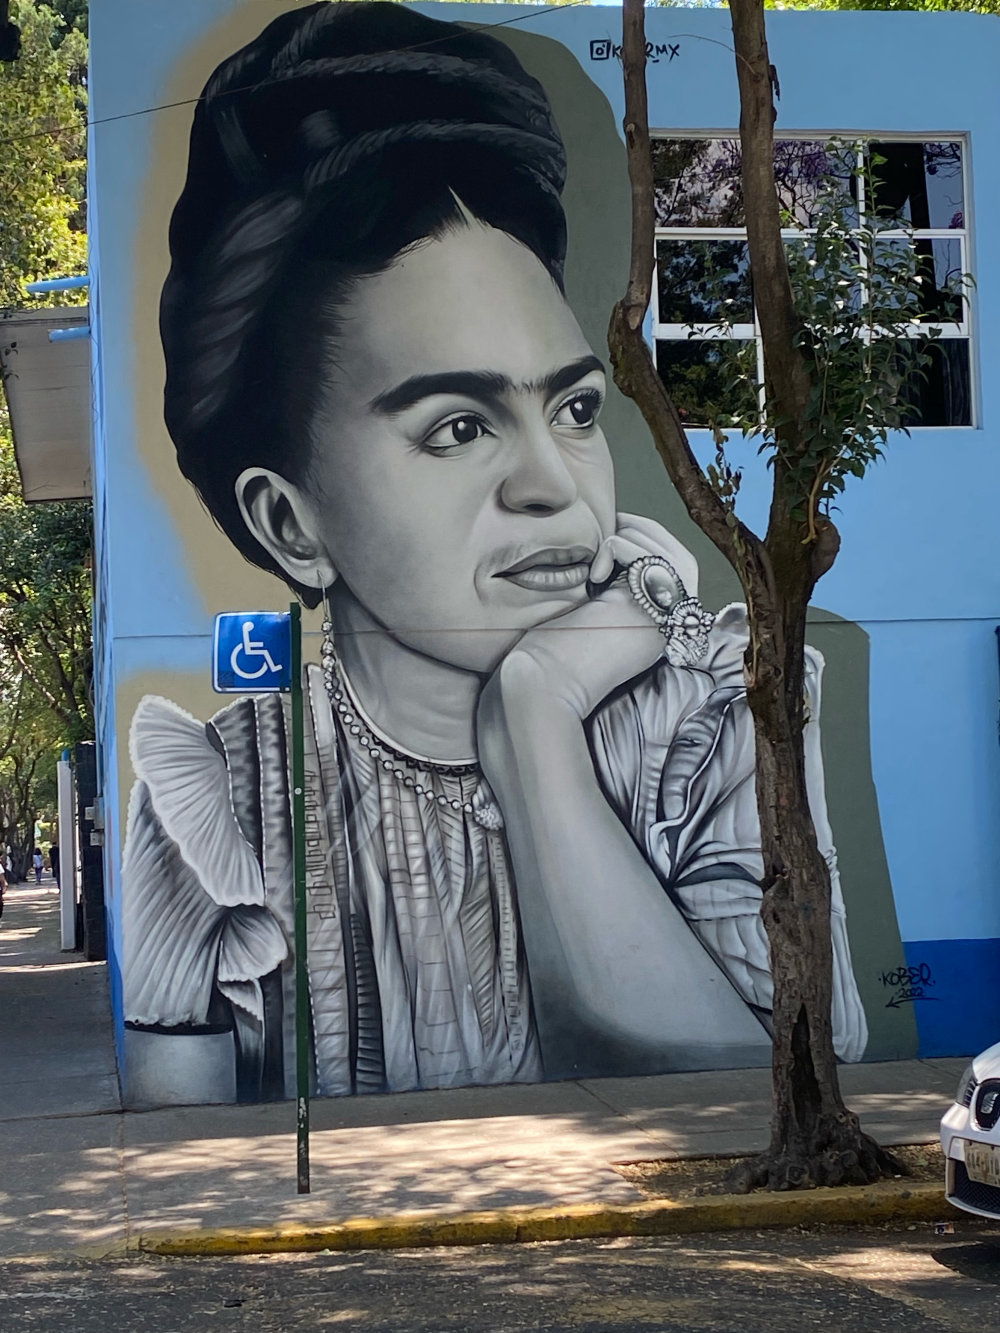 mural in Ciudad de México by artist unknown.